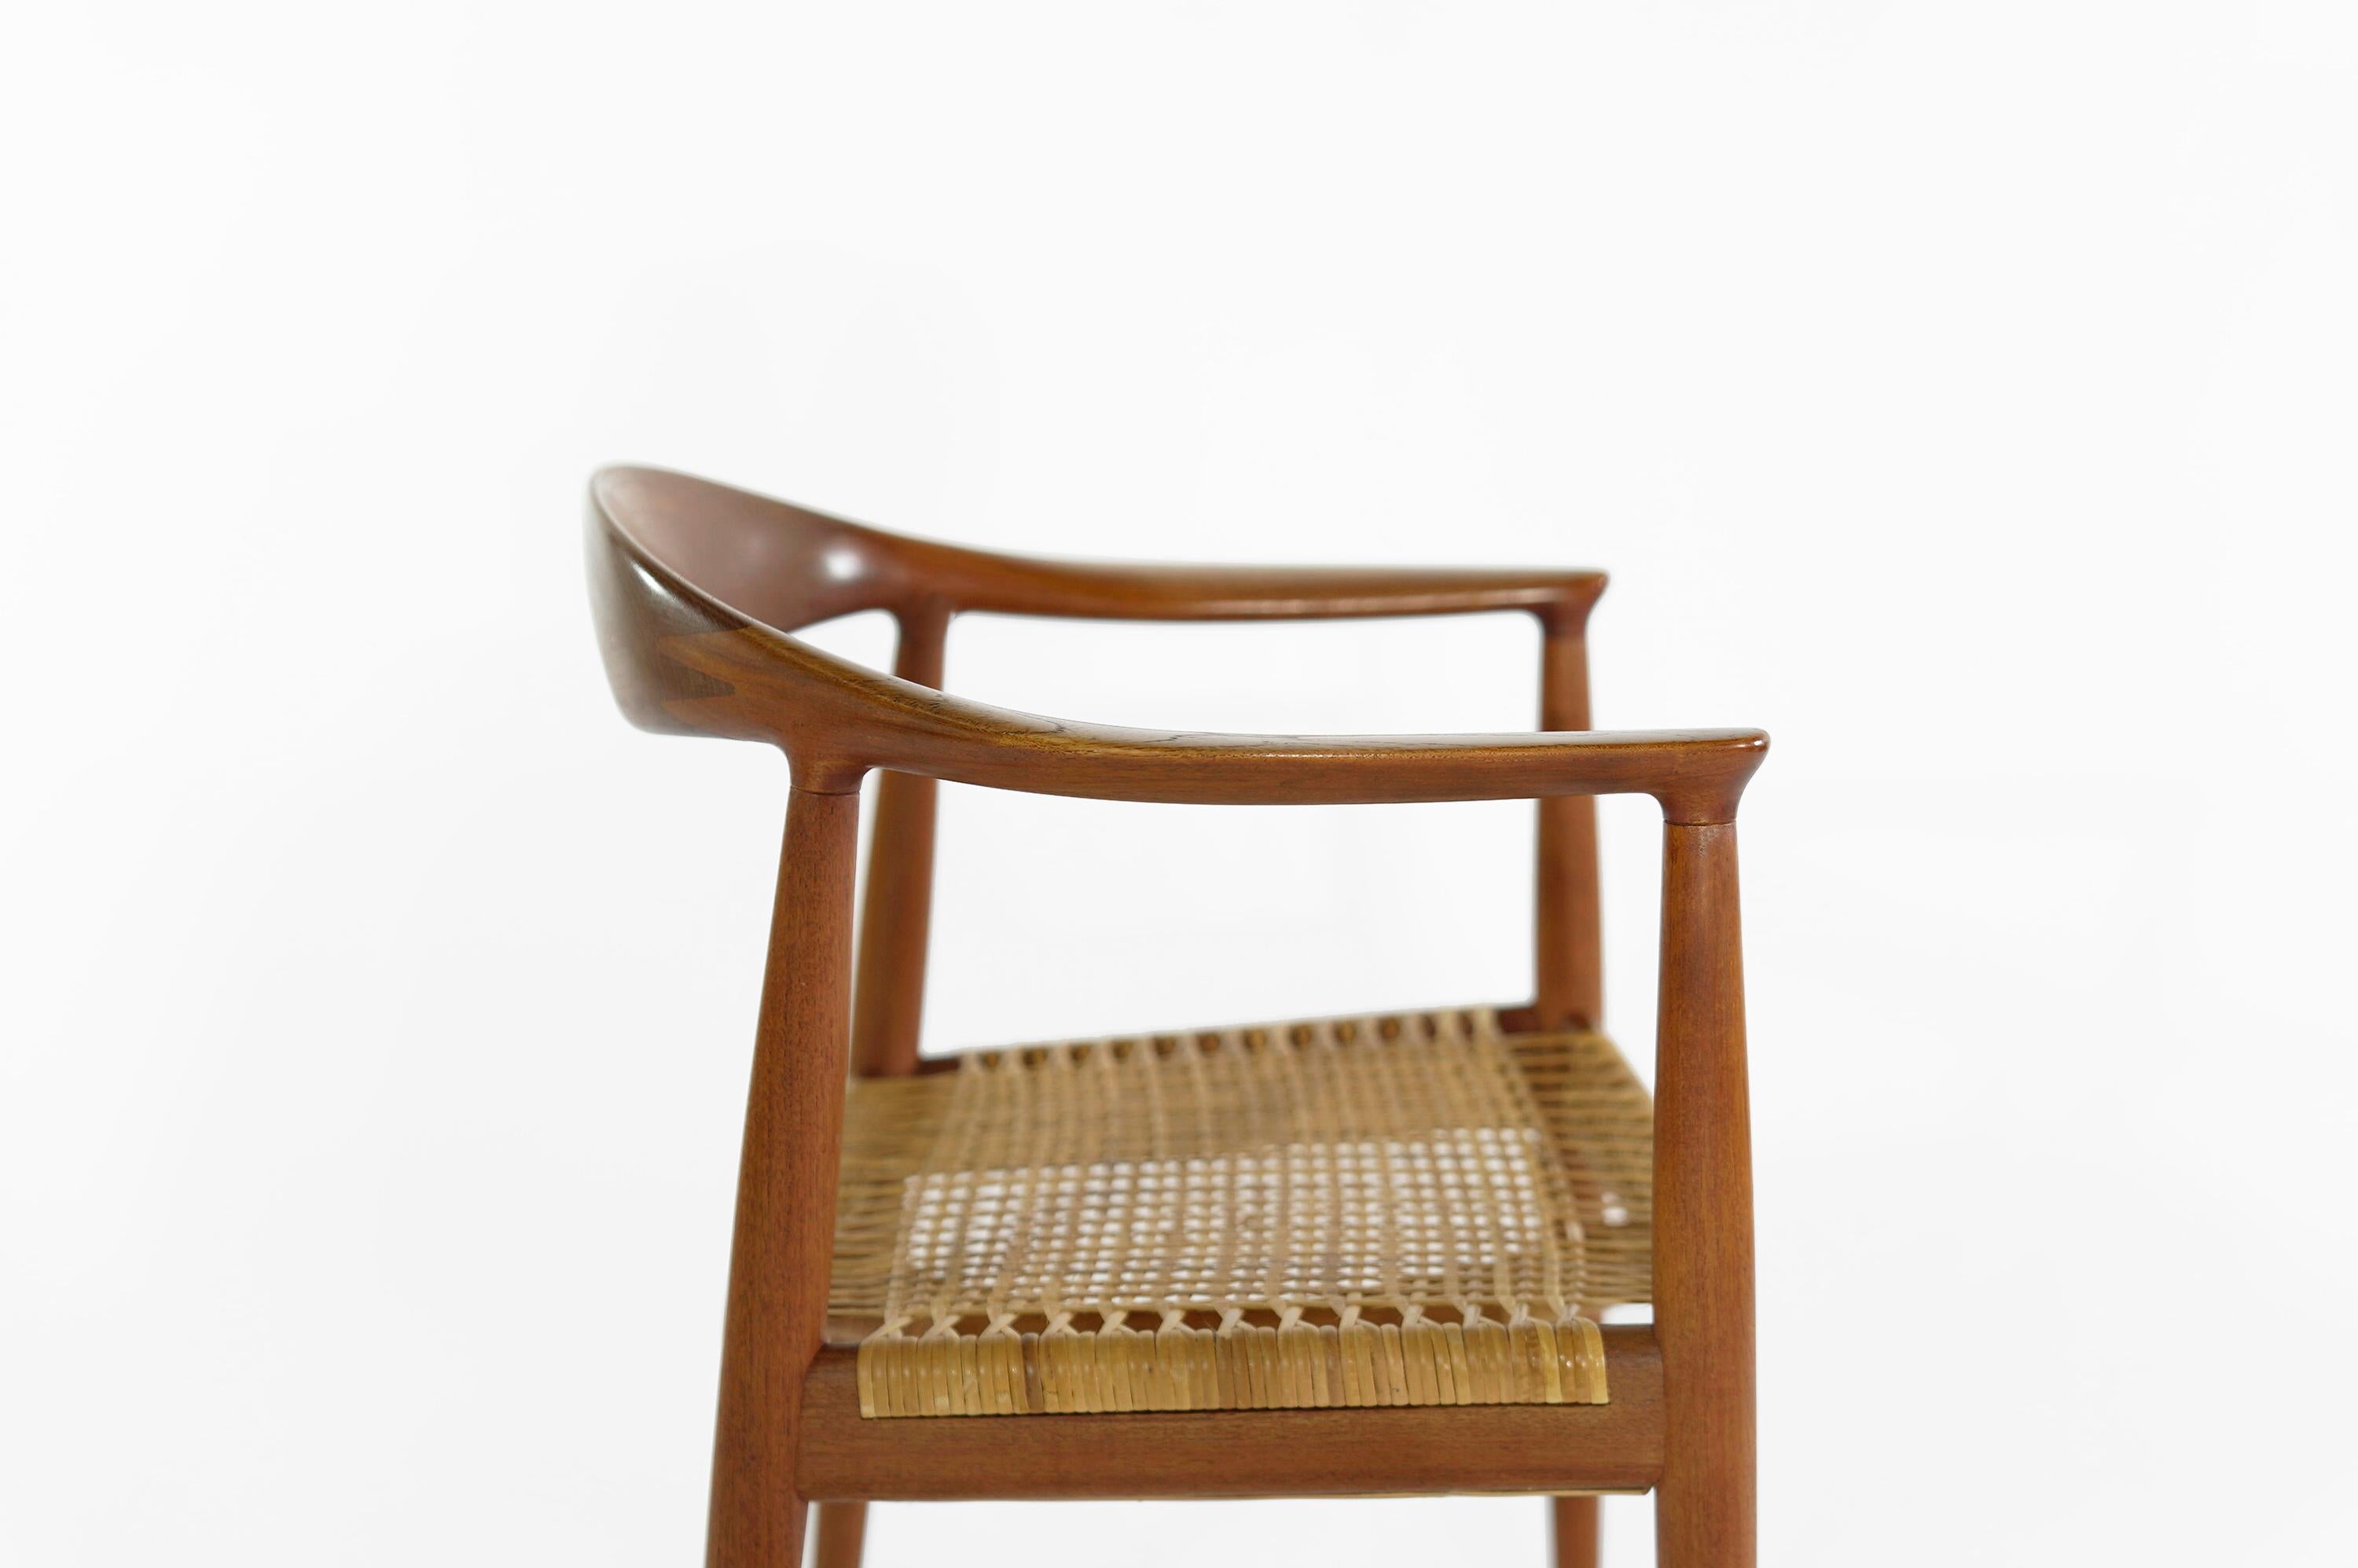 Cane Hans Wegner The Chair, Model JH501, Johannes Hansen, Denmark, 1950s